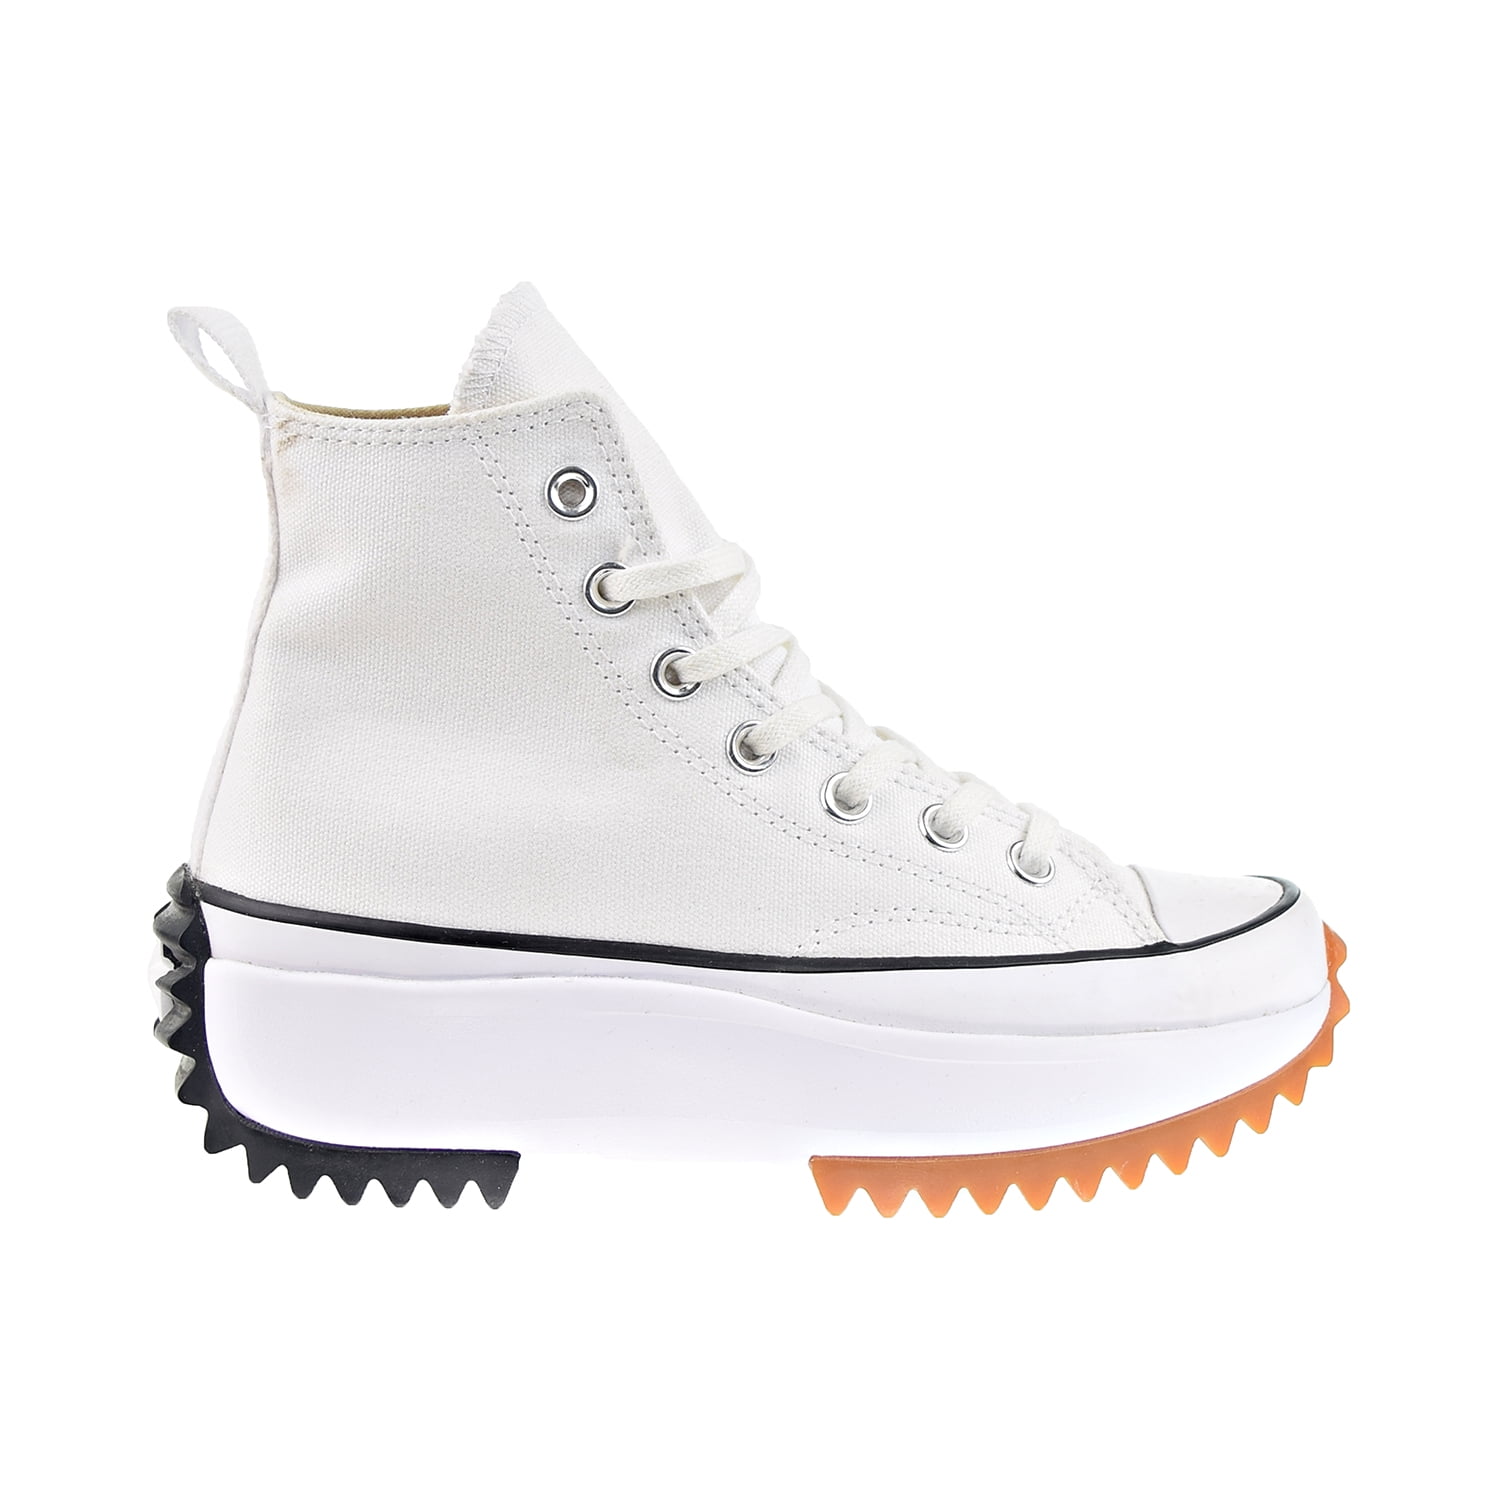 Converse Run Star Hike Shoes White-Black-Gum 166799c Walmart.com